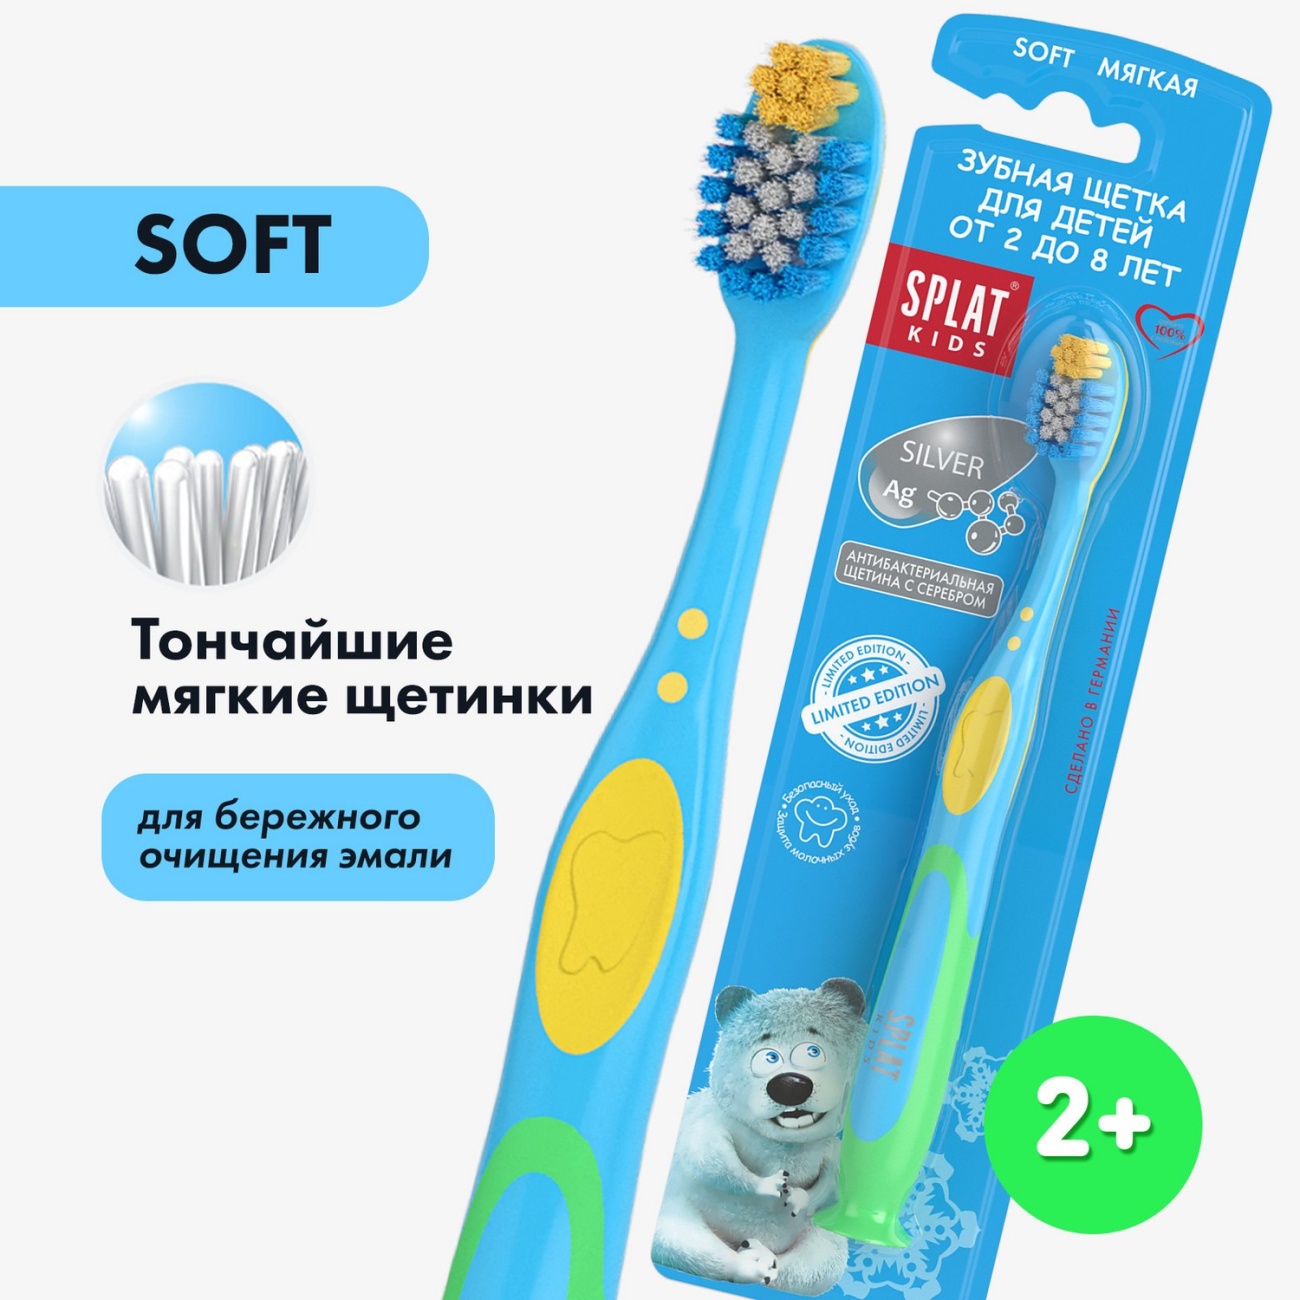 Зубная щетка SPLAT Kids 1шт для детей от 2 до 8 лет голубая 4052500102568/голубая